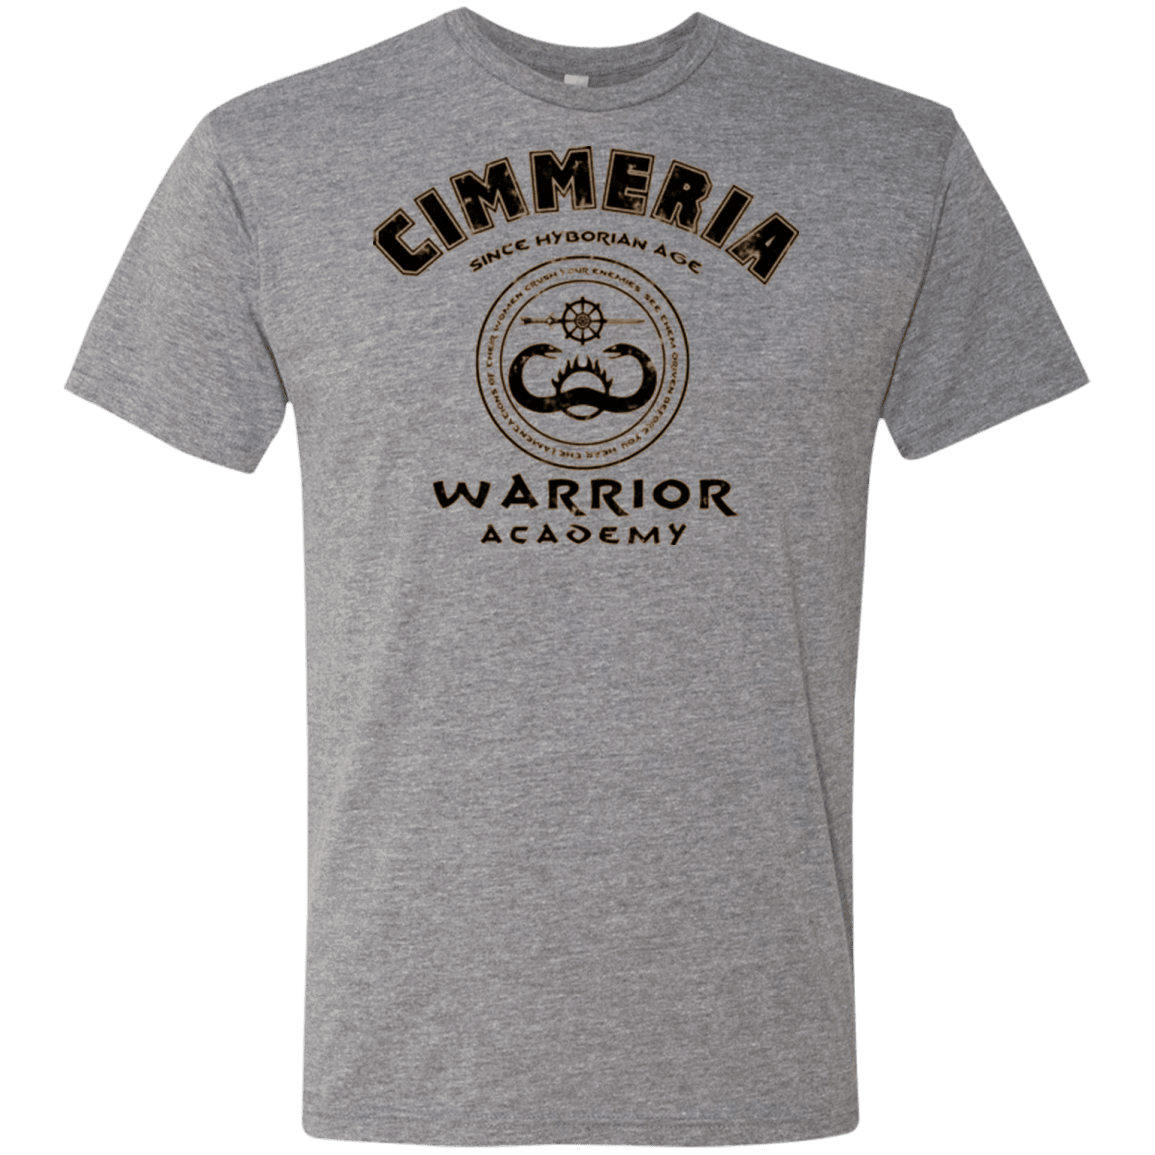 T-Shirts Premium Heather / Small Crimmeria Warrior academy Men's Triblend T-Shirt